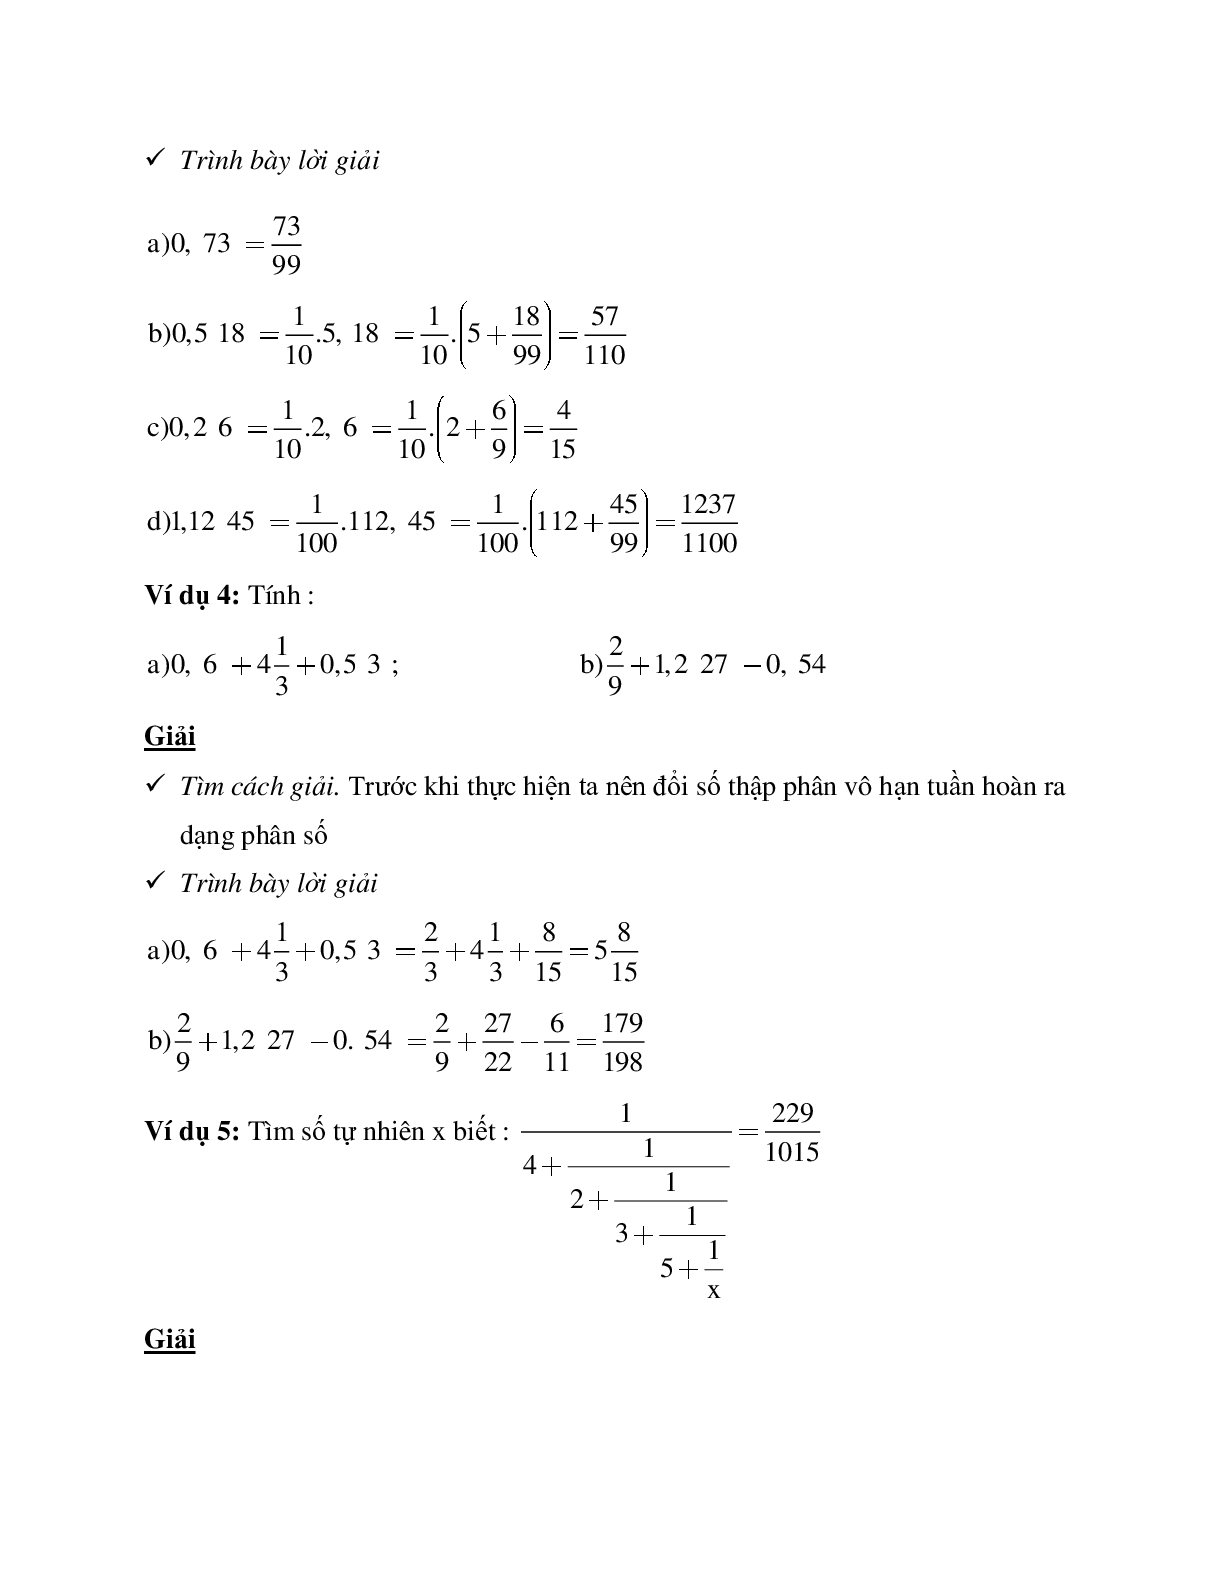 Hệ thống bài tập về Số thập phân hữu hạn - Số thập phân vô hạn tuần hoàn - Làm tròn số có lời giải (trang 3)